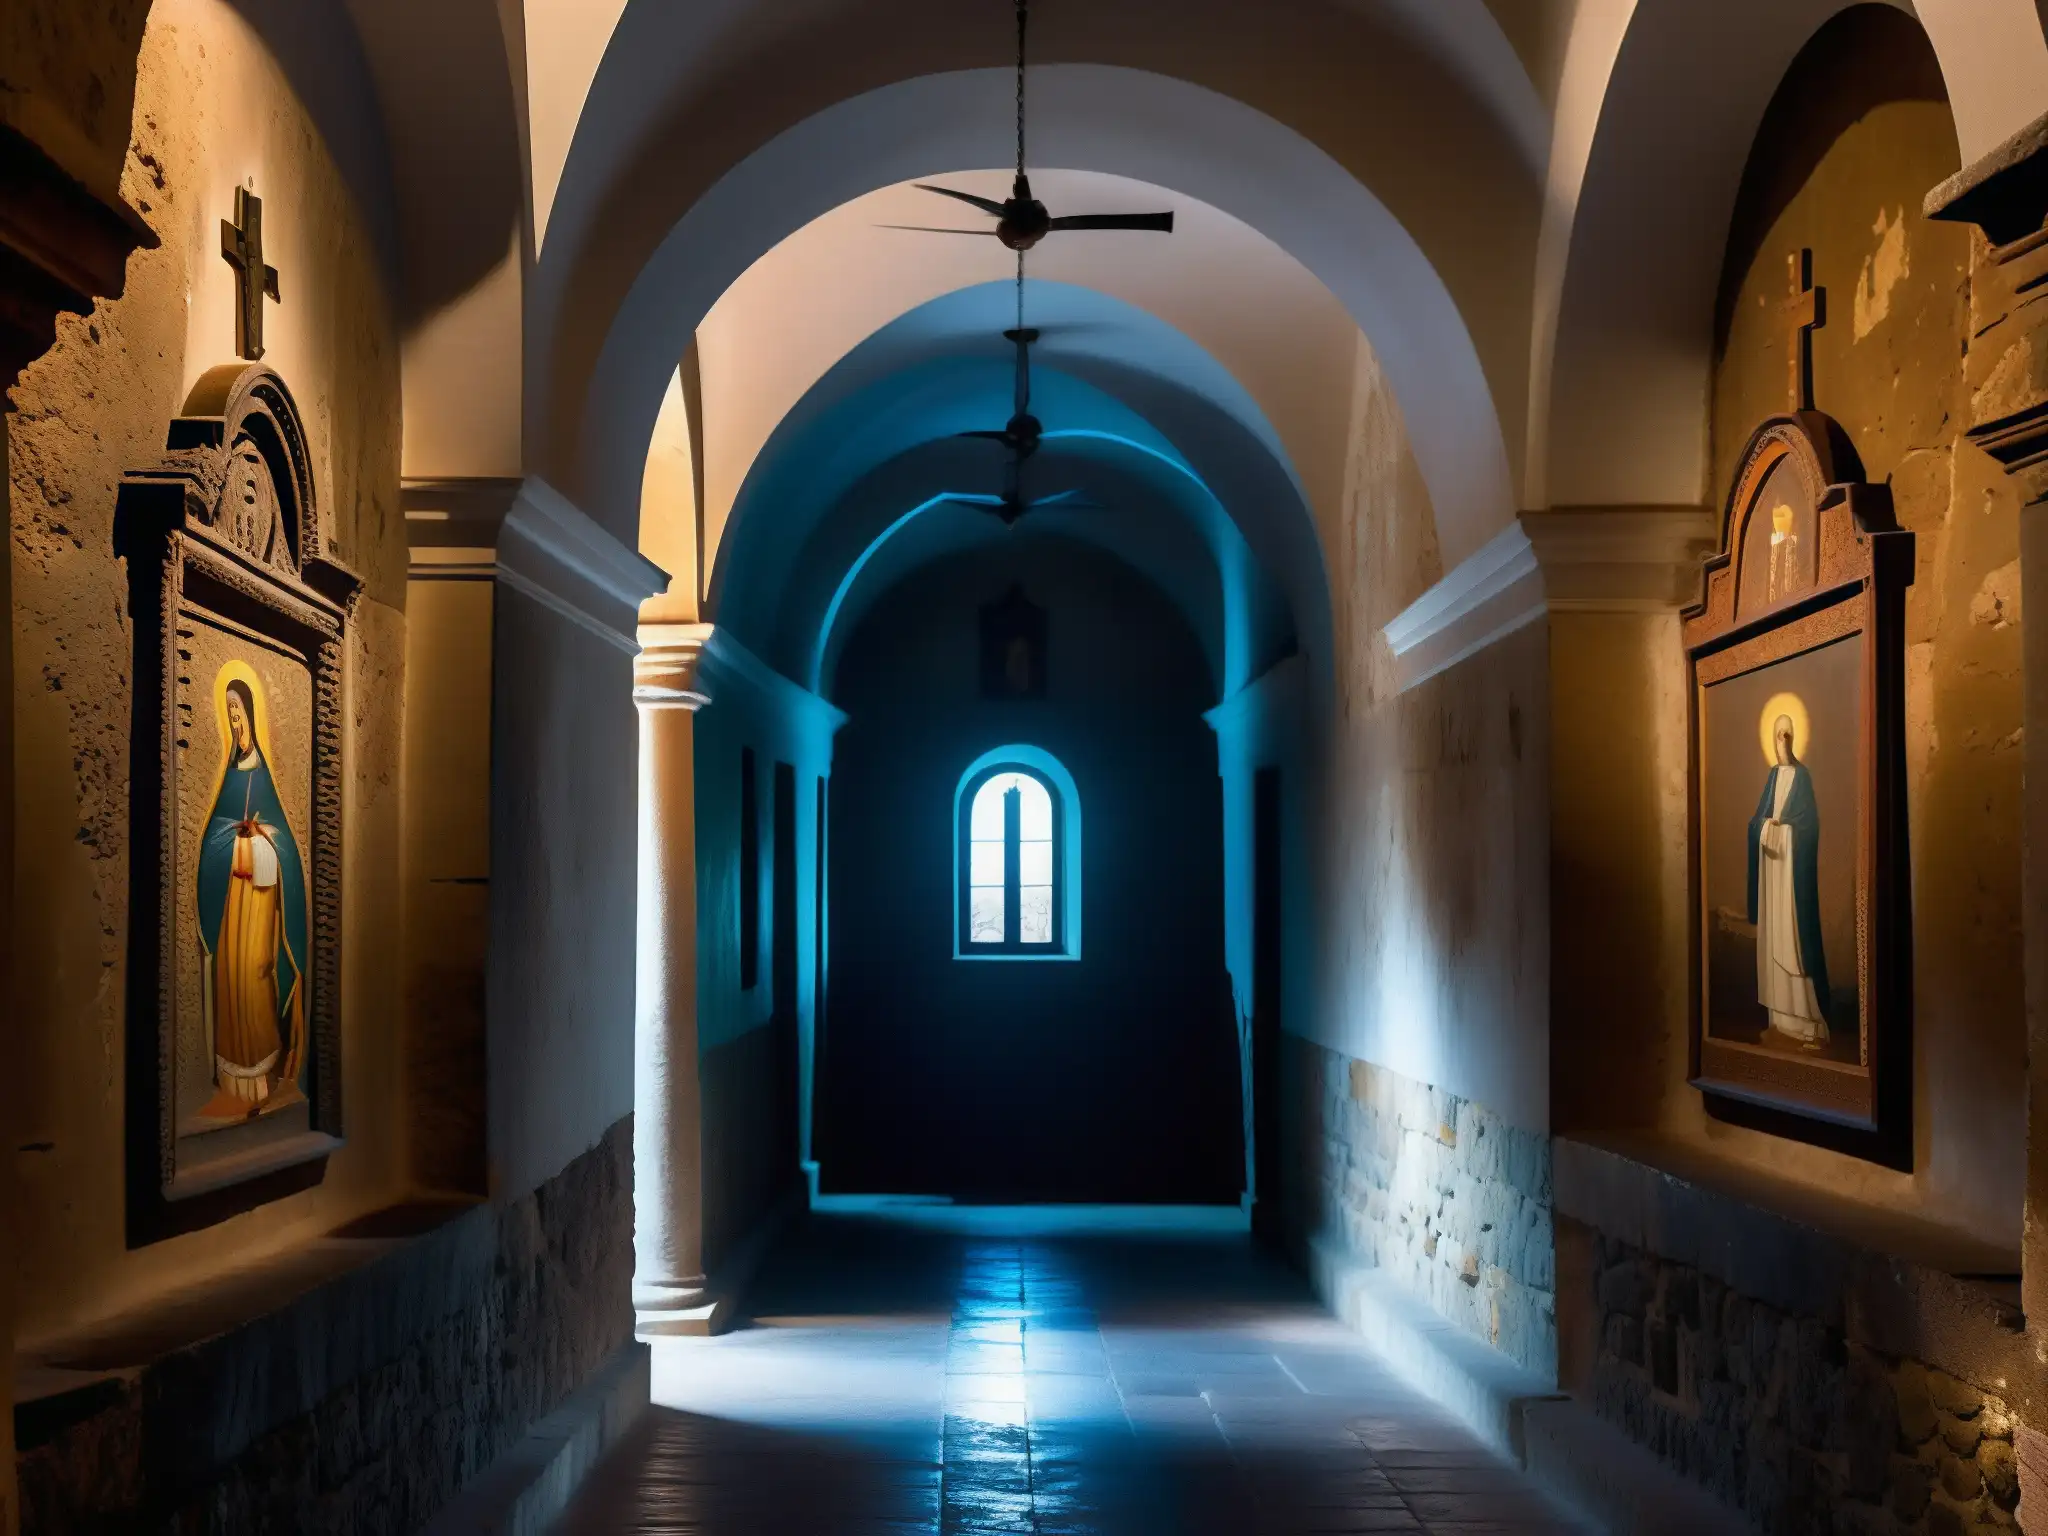 Interior misterioso del Convento de la Concepción, con arte religioso en las paredes de piedra y una atmósfera fantasmagórica que evoca el mito de la monja fantasma